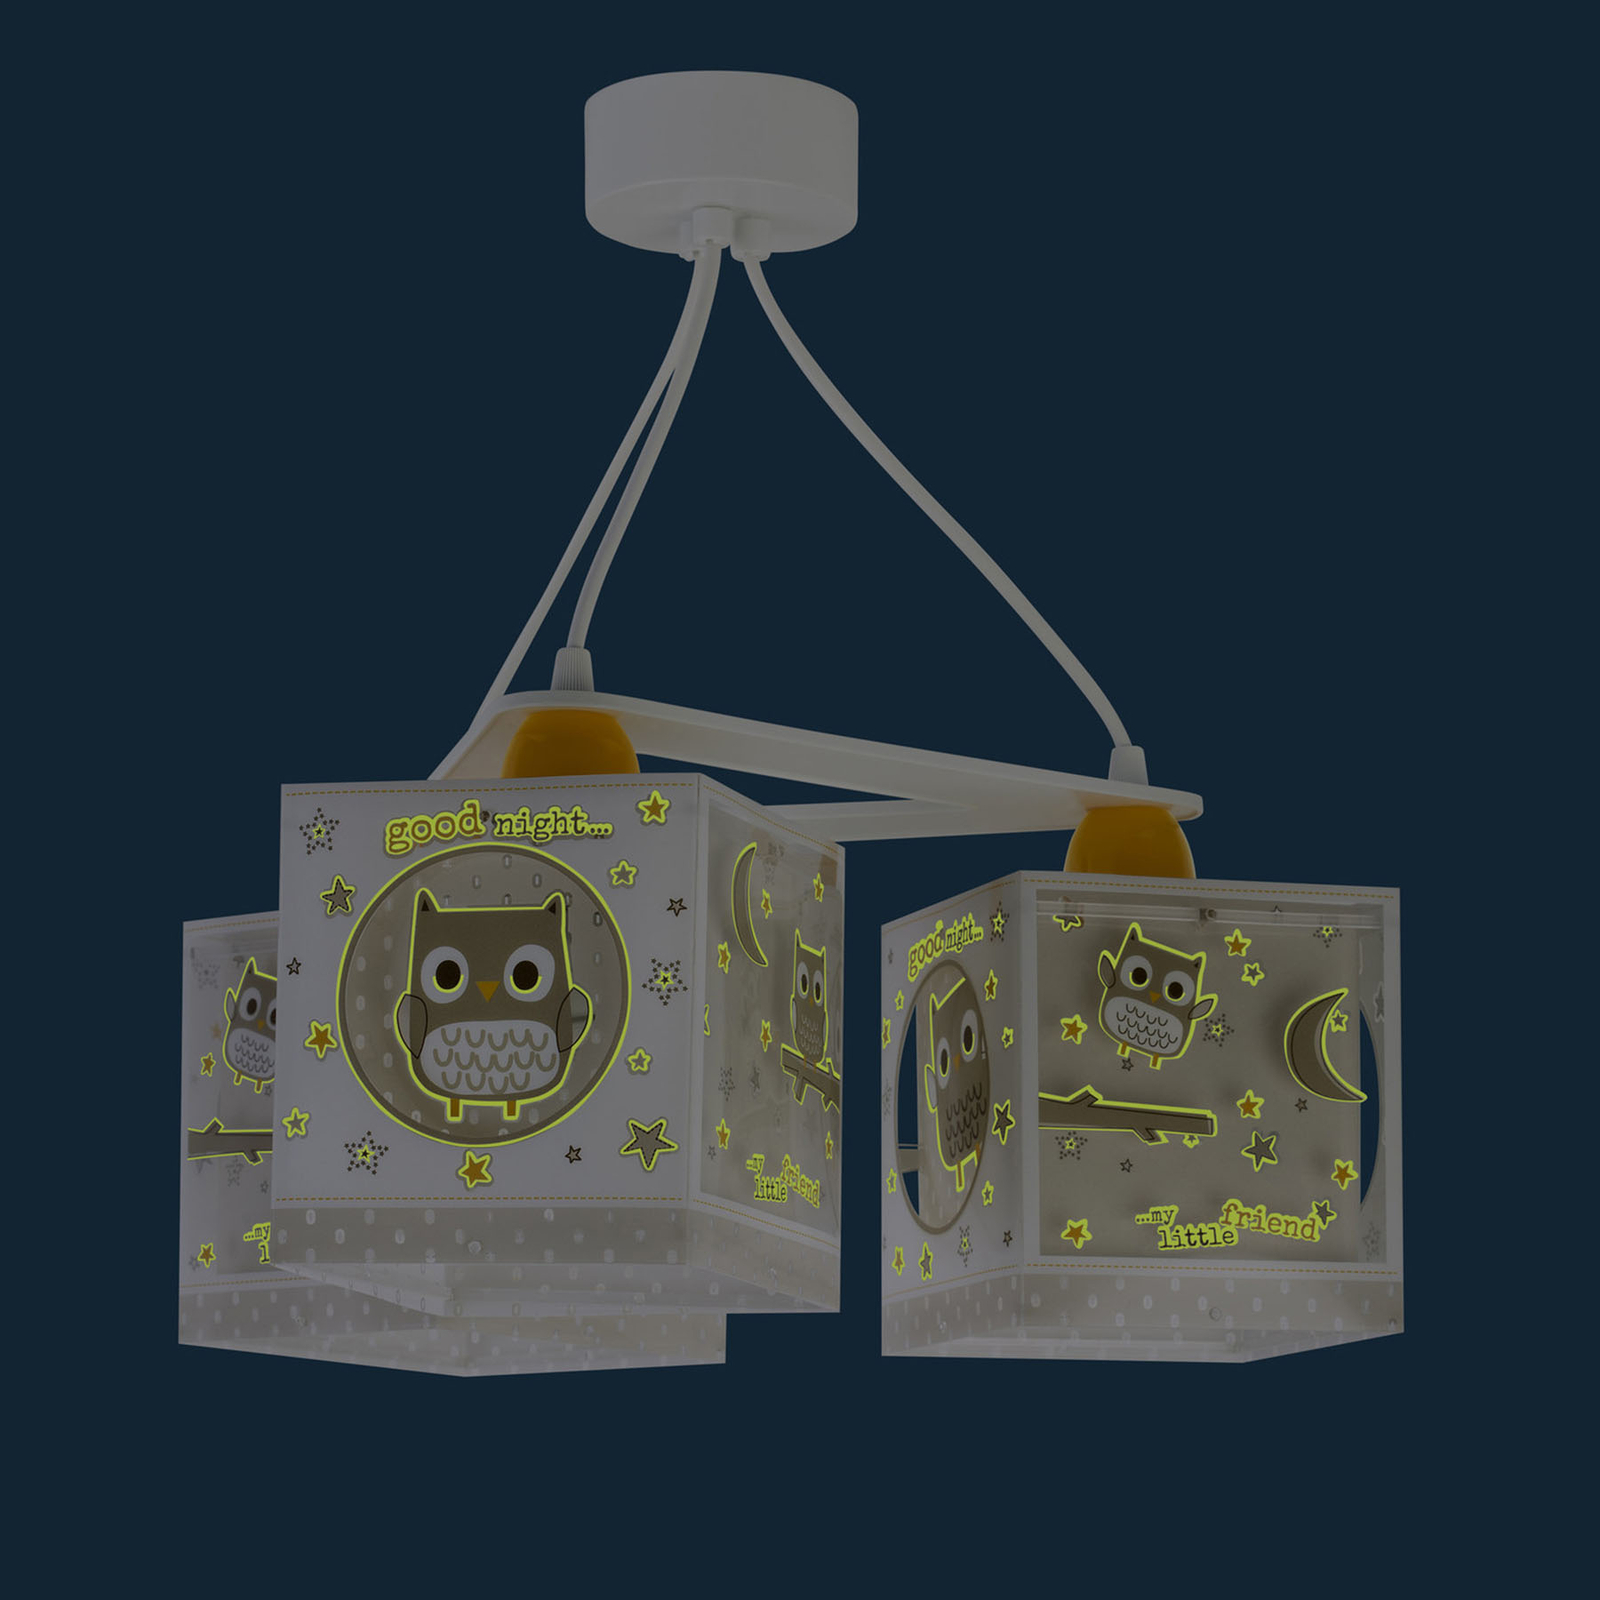 Hanglamp Good Night voor kinderen, 3-lamps